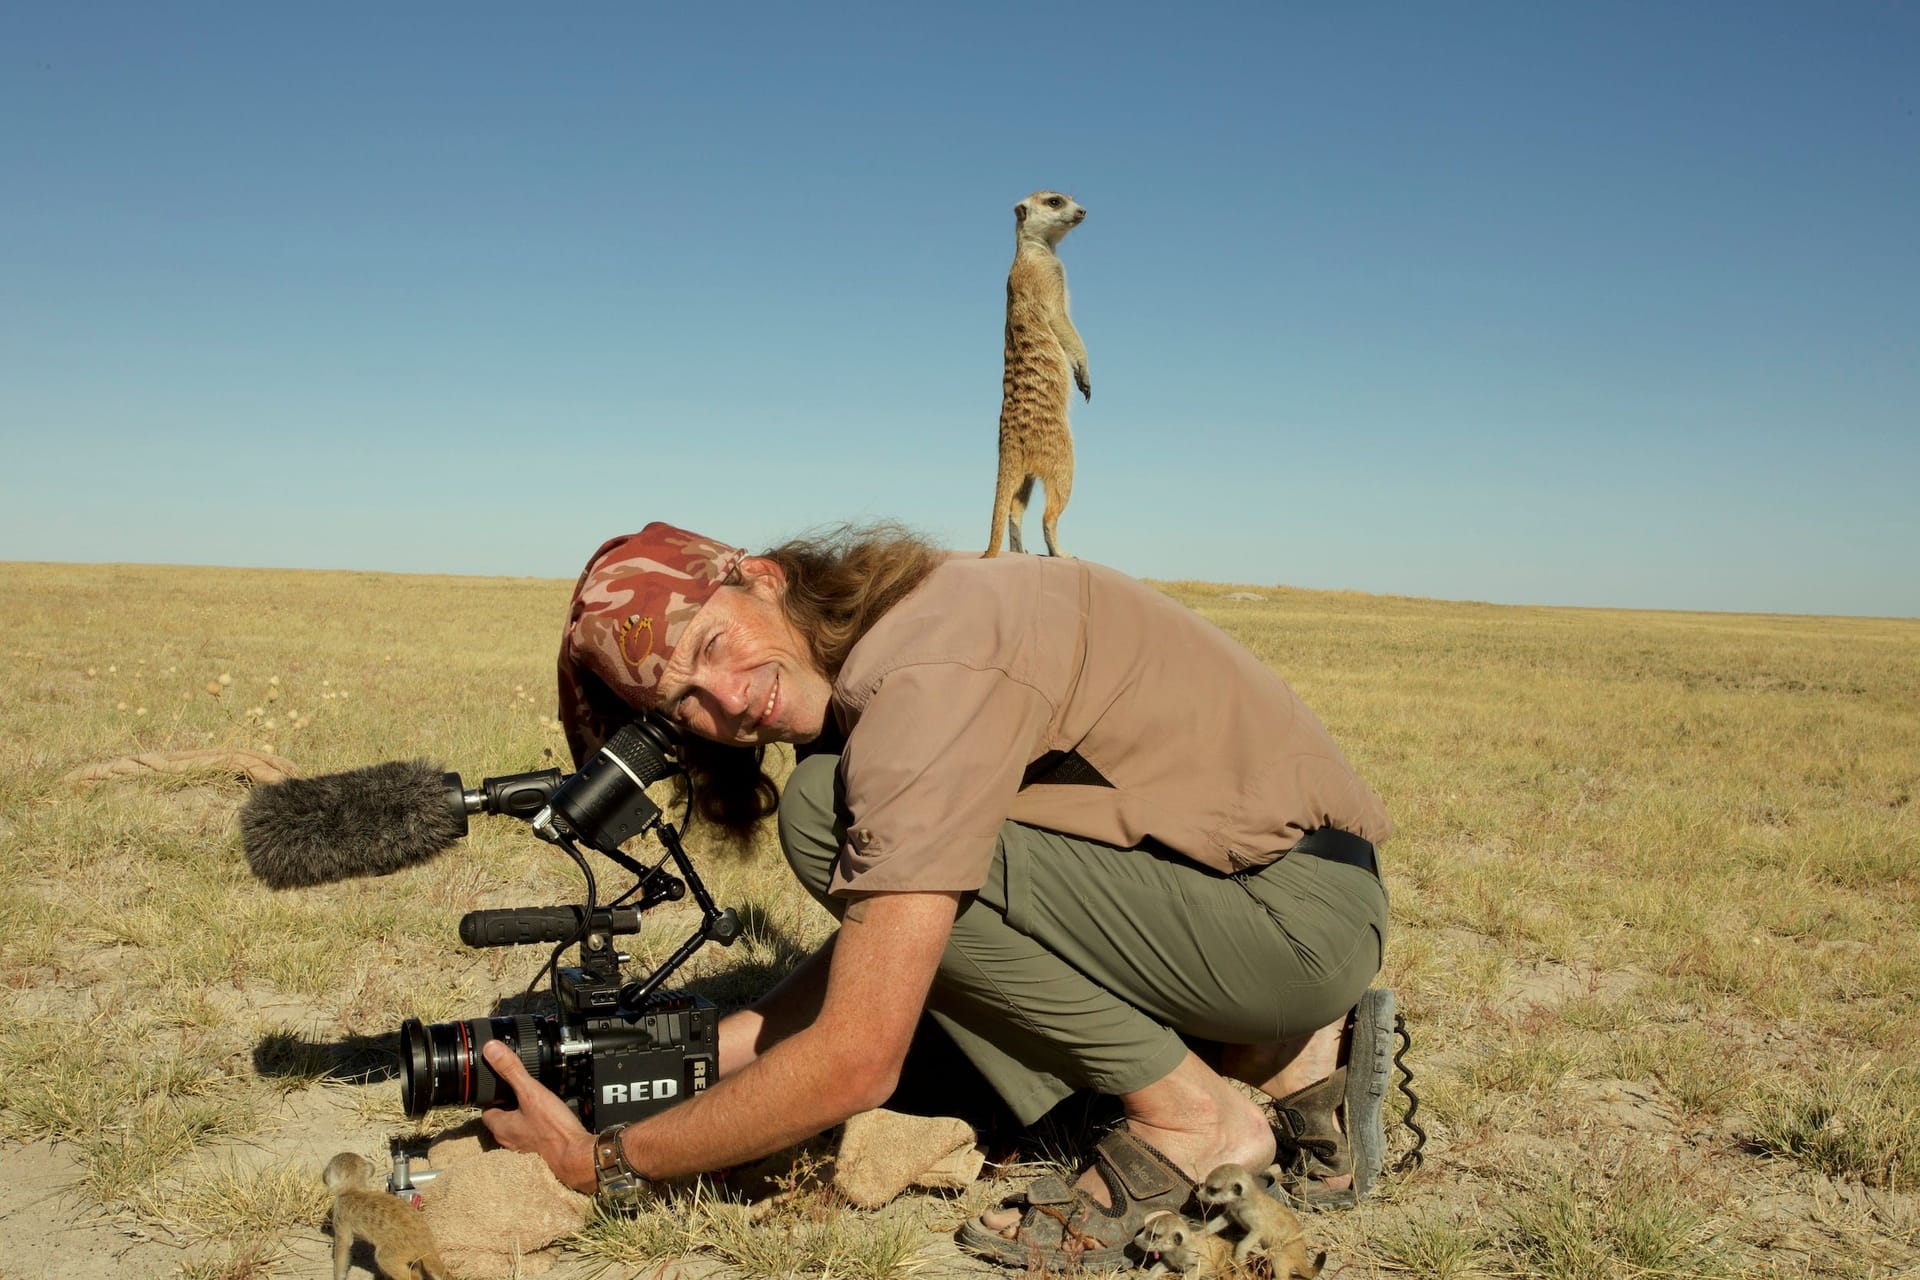 Der Filmemacher in seinem Element: Mitten in der Wildnis gibt es nur ihn, die Tiere und sein Equipment.